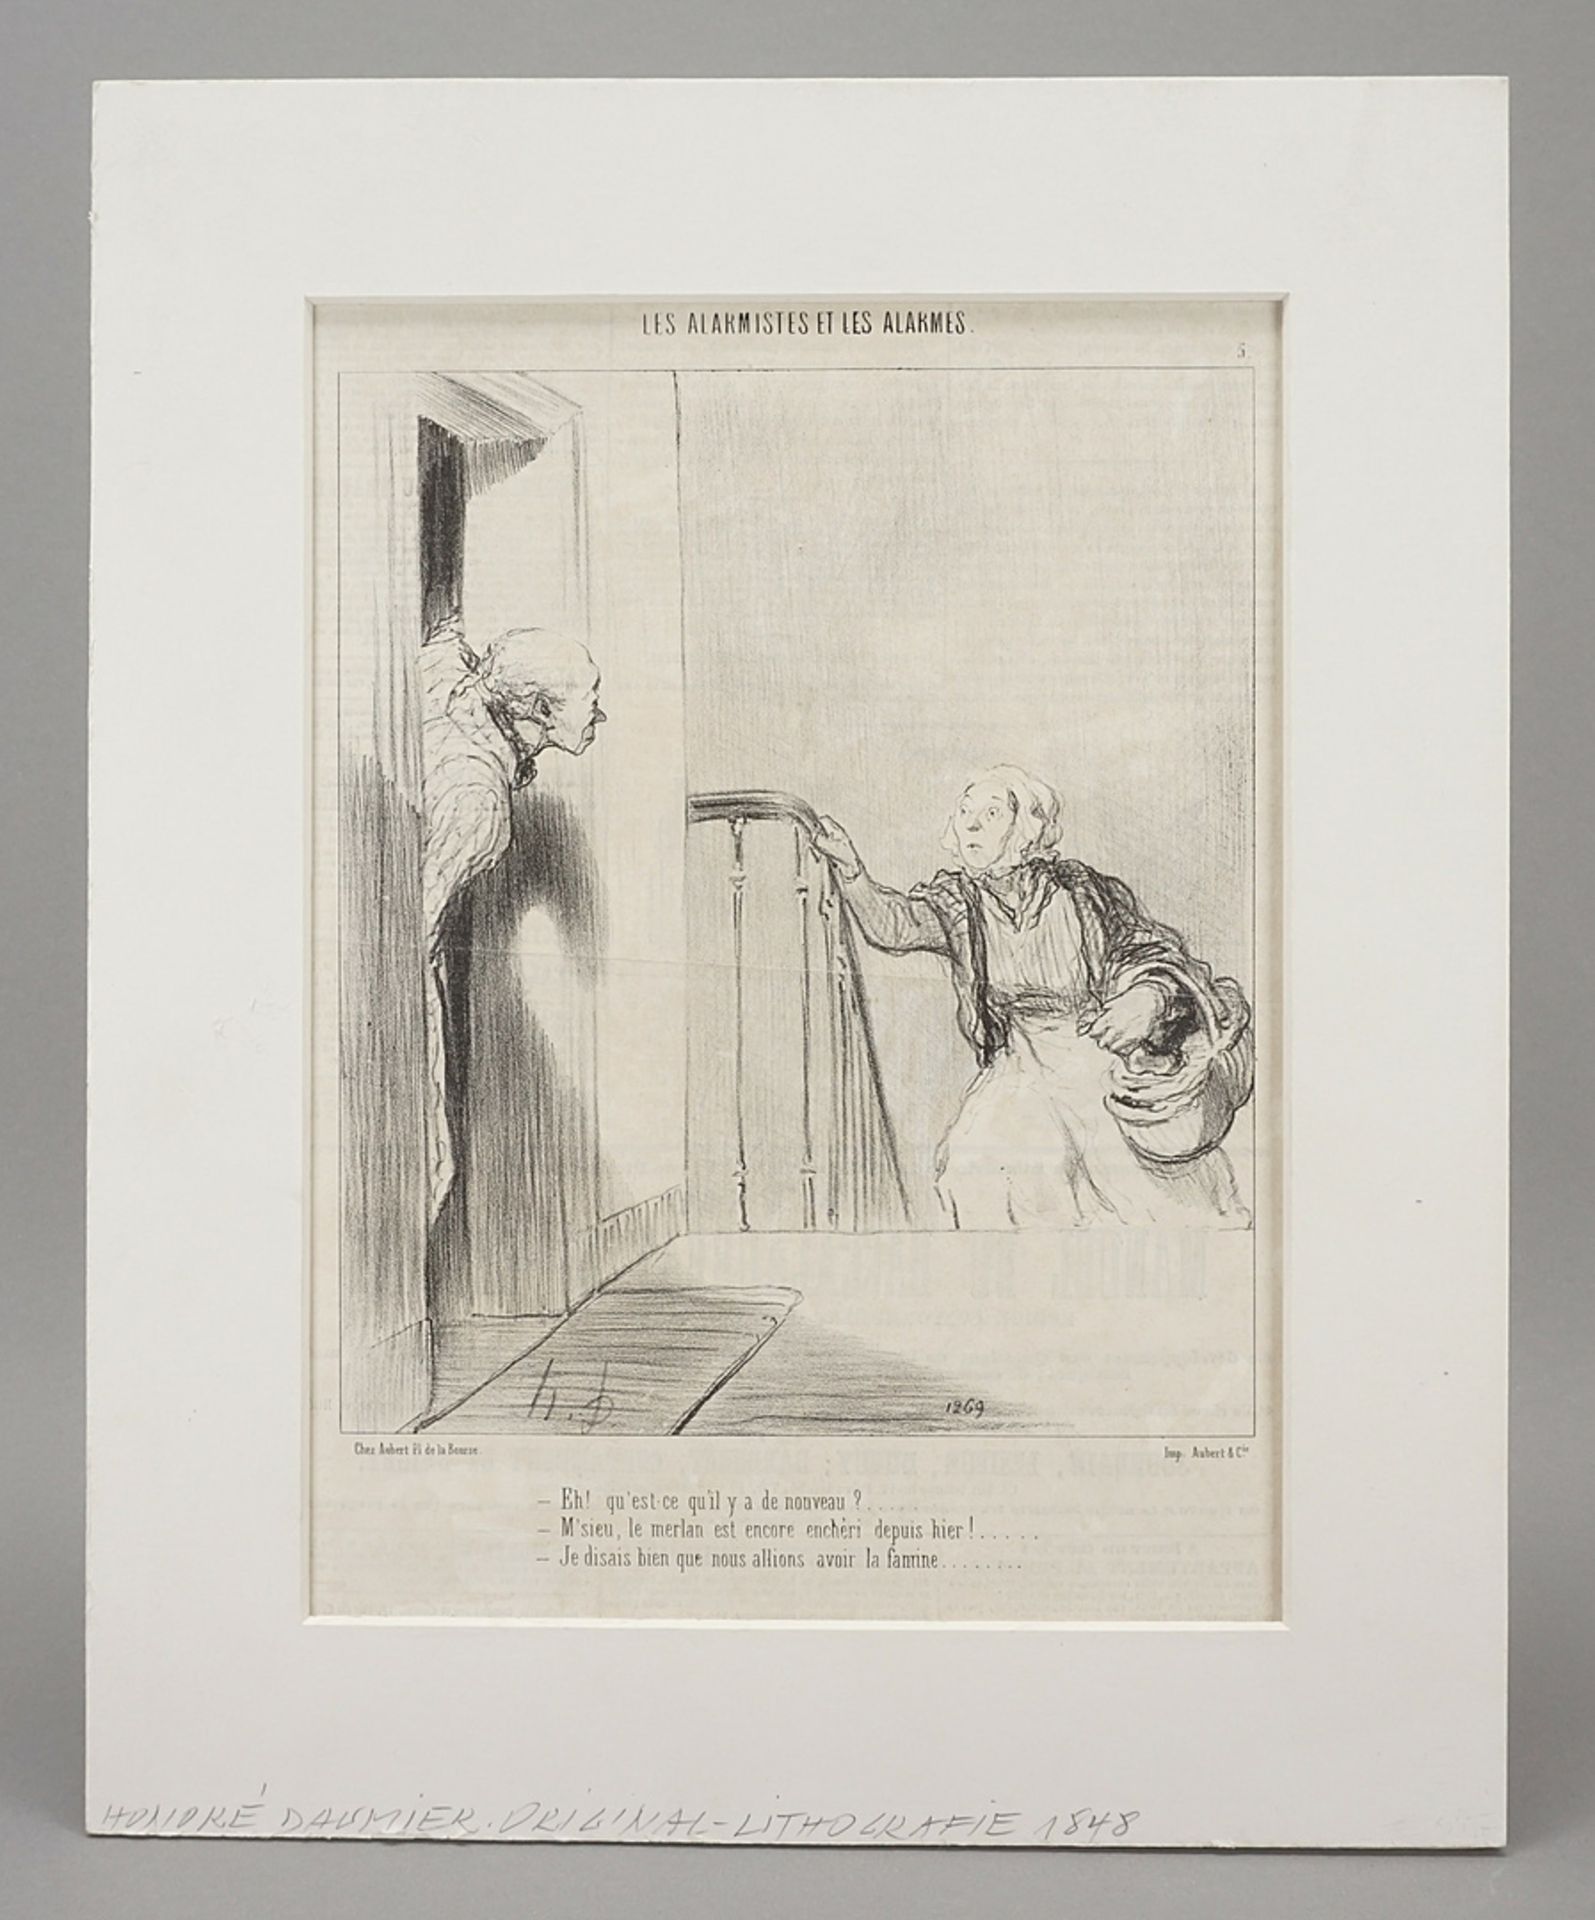 Honoré Daumier (1808-1879), "Qu'est-ce qu'il y a nouveau?" (What's new?) - Image 2 of 4